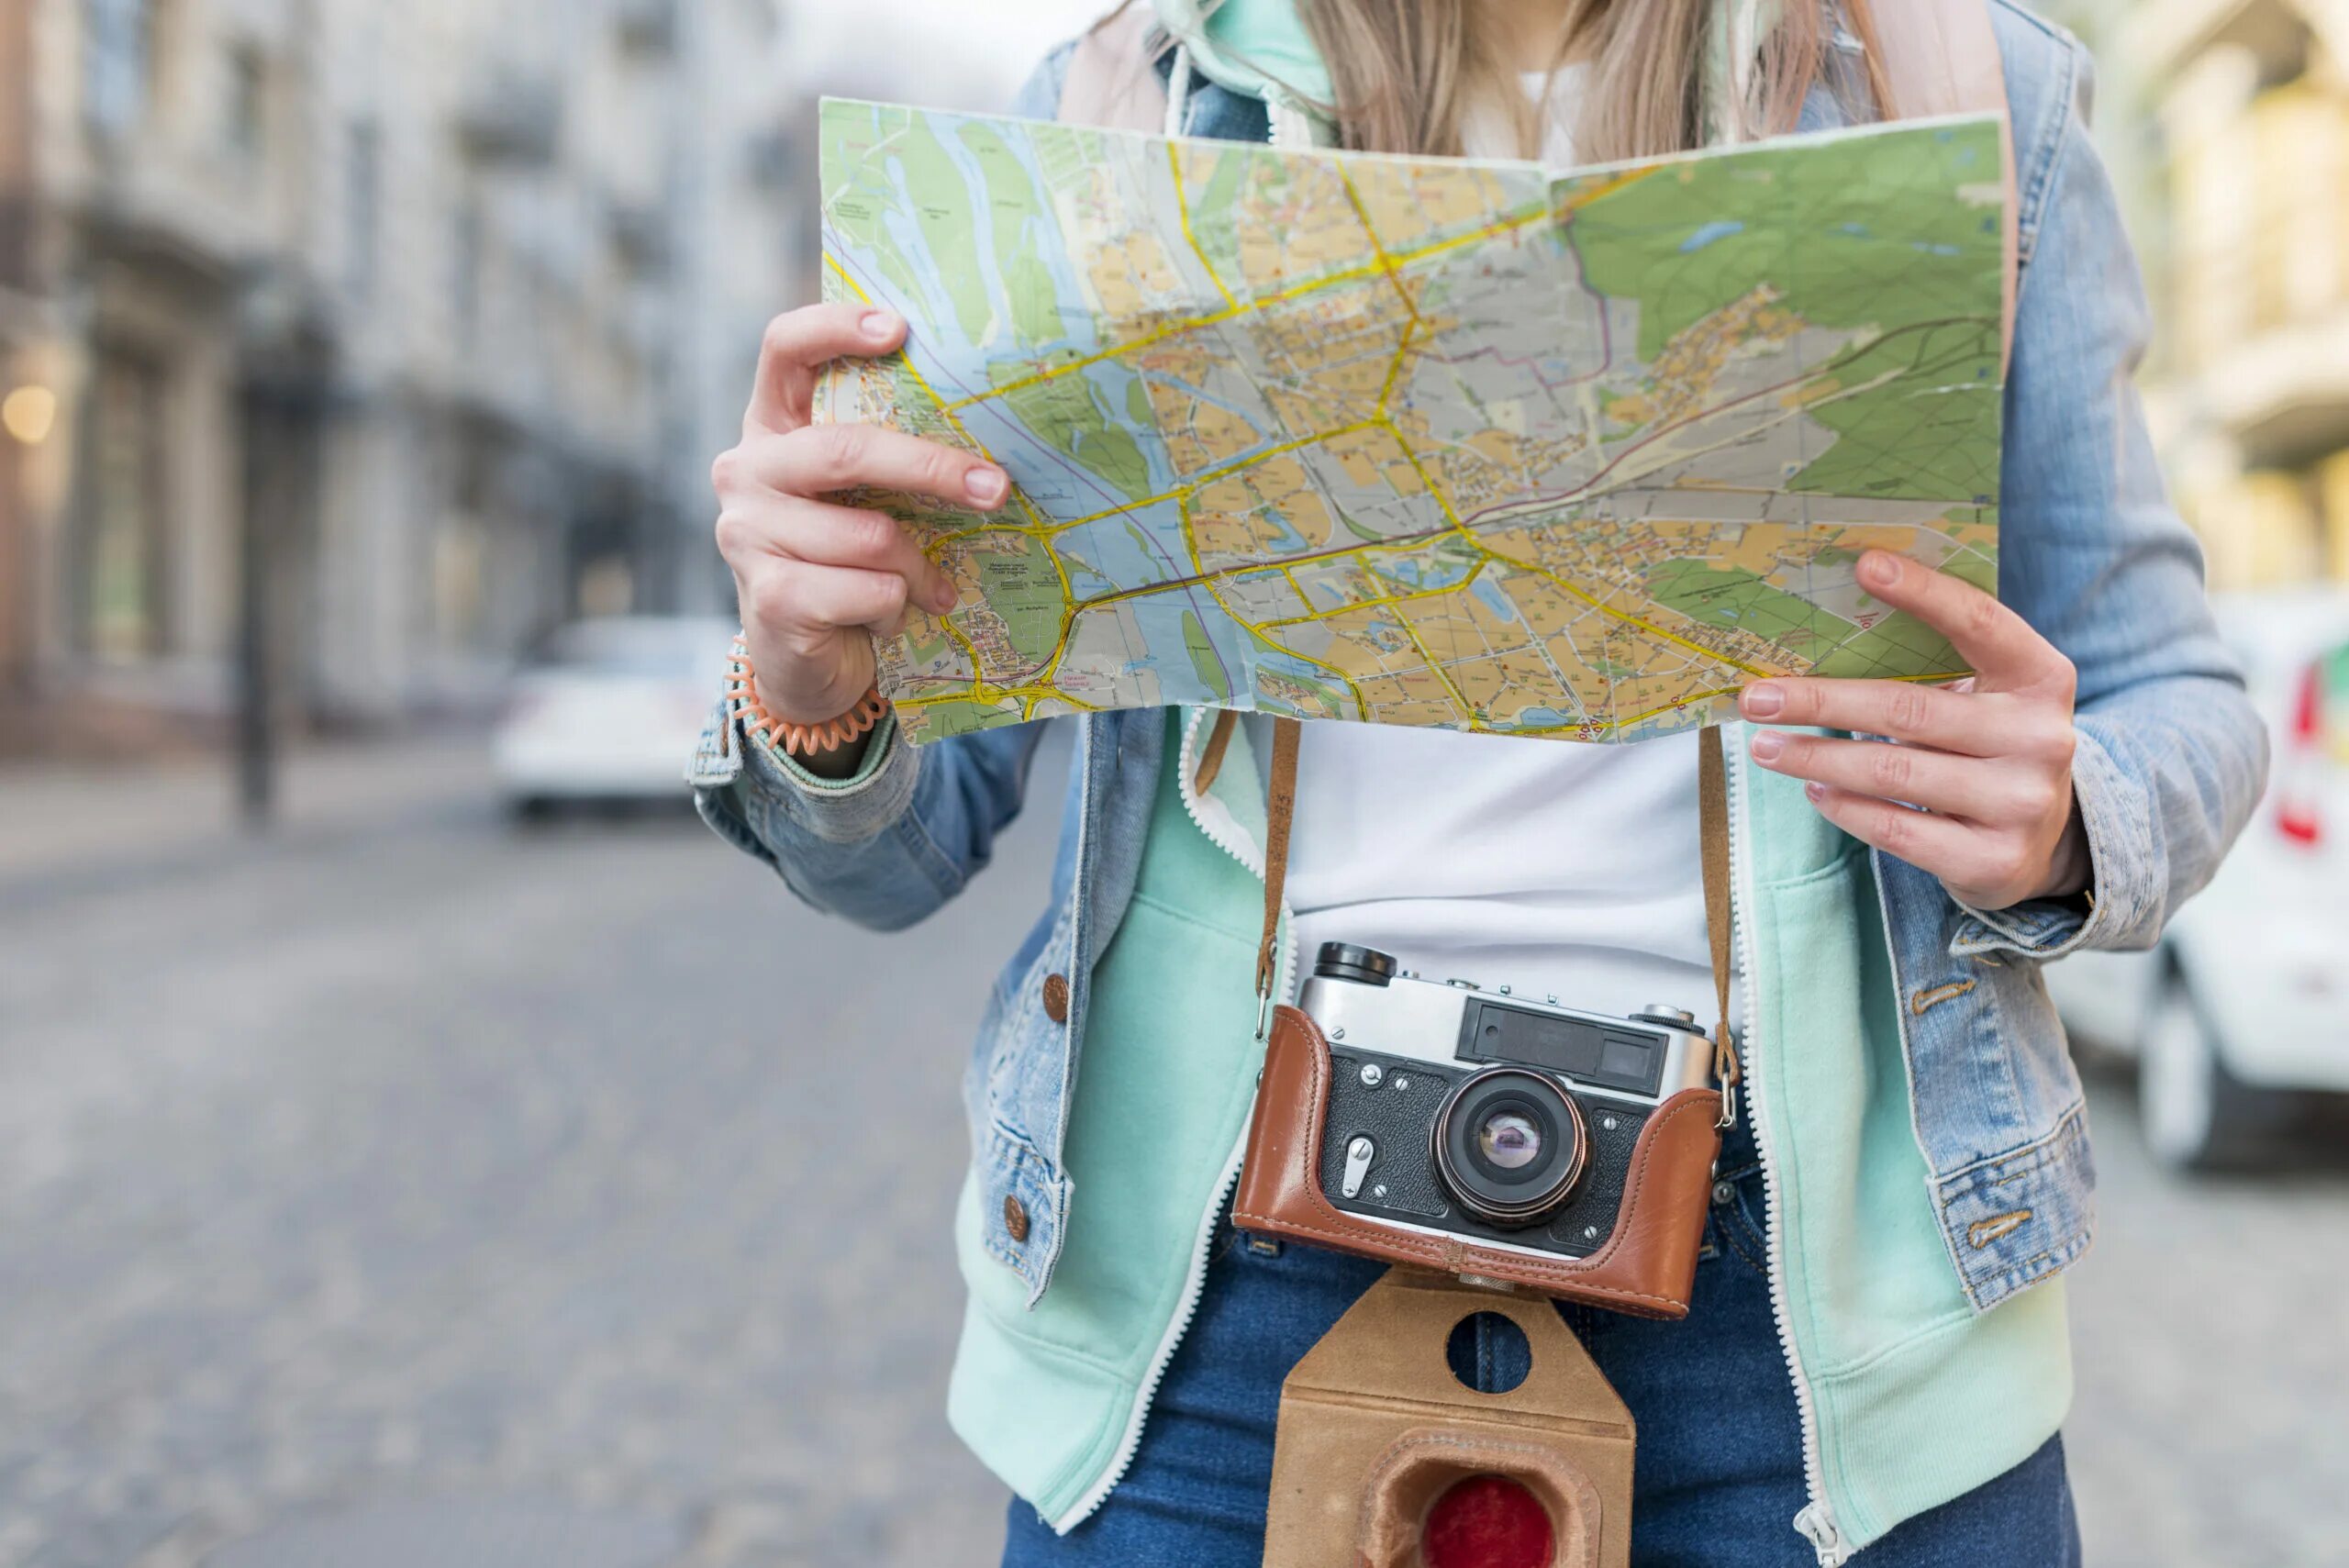 Нужен человек с картой. Турист с картой в руках. Девушка с картой города. Человек с картой в руках. Карта в руках путешественника.